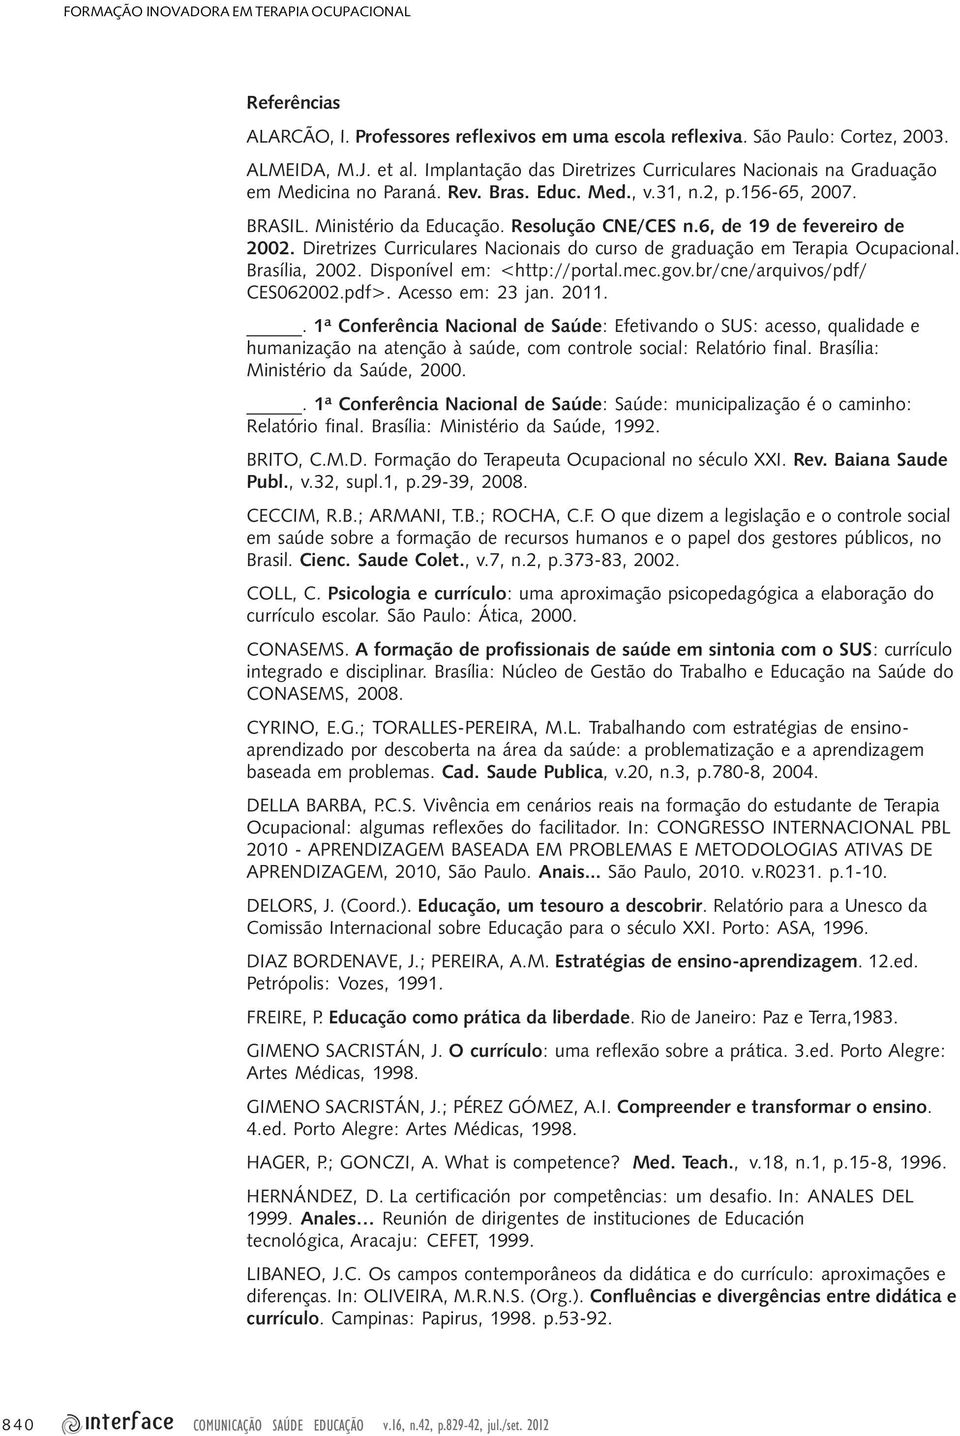 6, de 19 de fevereiro de 2002. Diretrizes Curriculares Nacionais do curso de graduação em Terapia Ocupacional. Brasília, 2002. Disponível em: <http://portal.mec.gov.br/cne/arquivos/pdf/ CES062002.